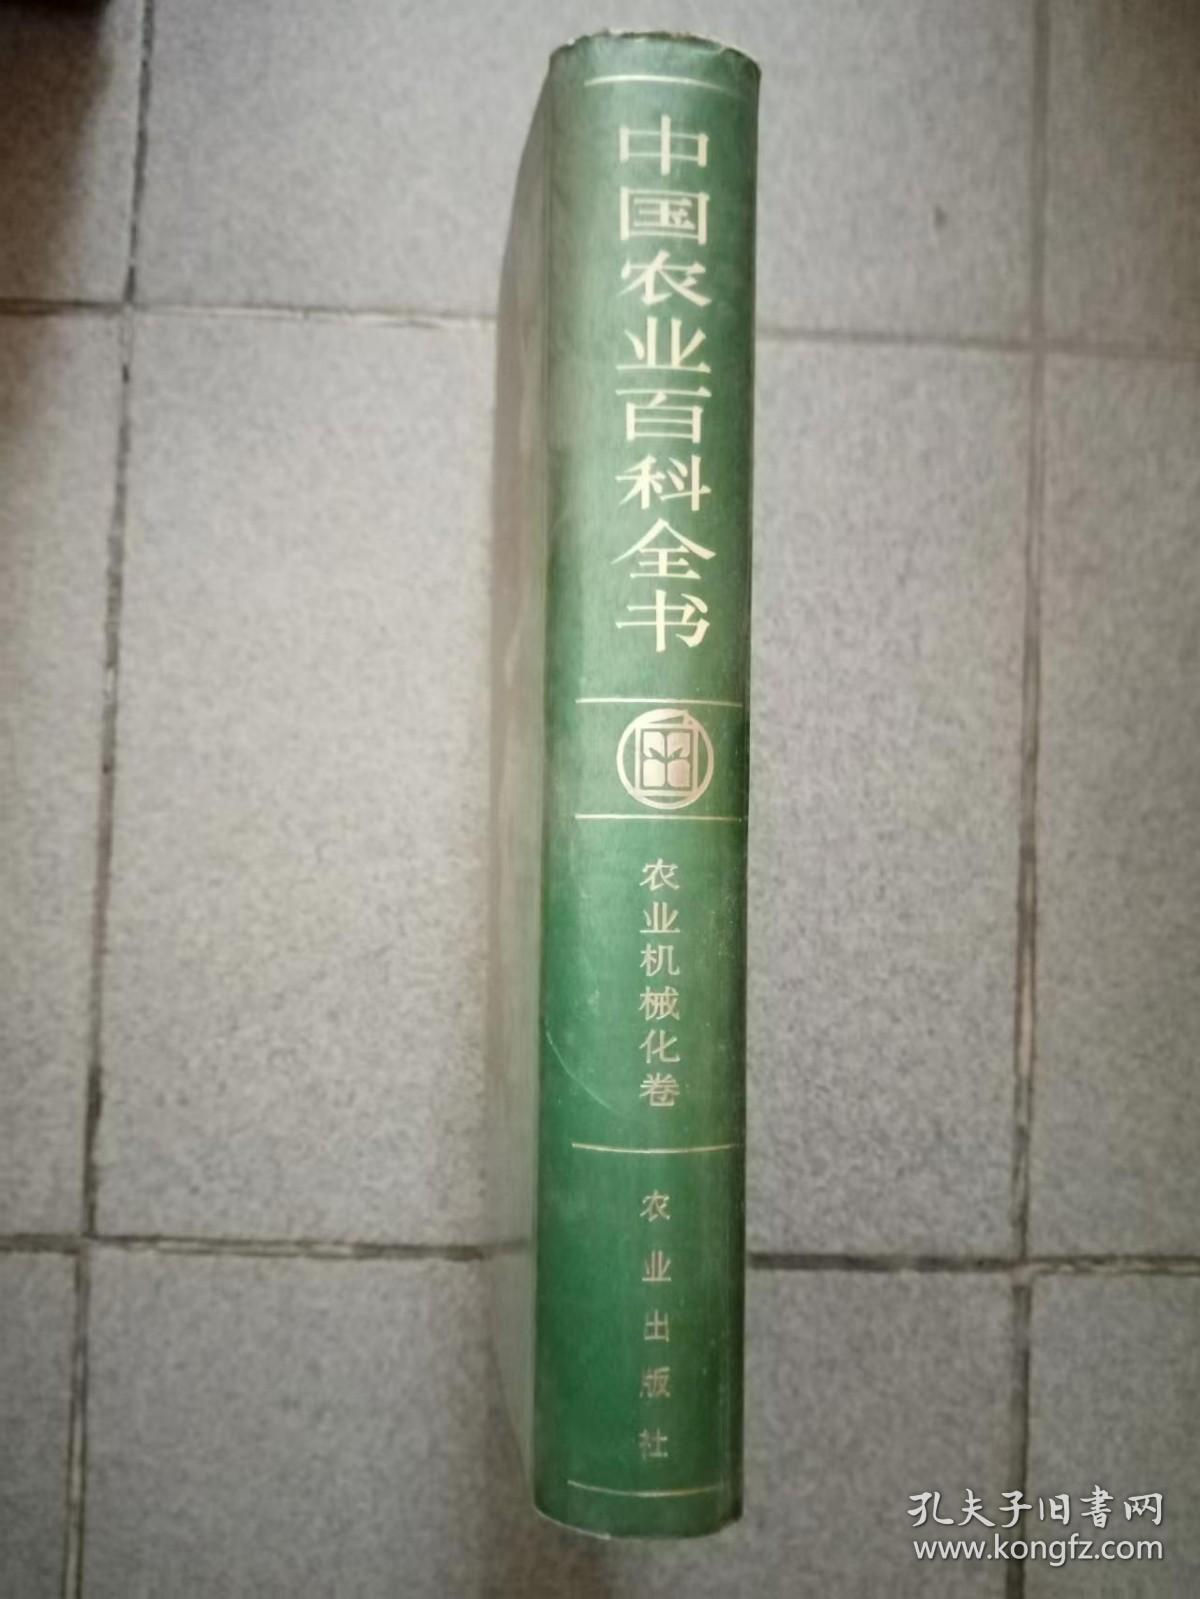 中国农业百科全书（农业机械化卷）